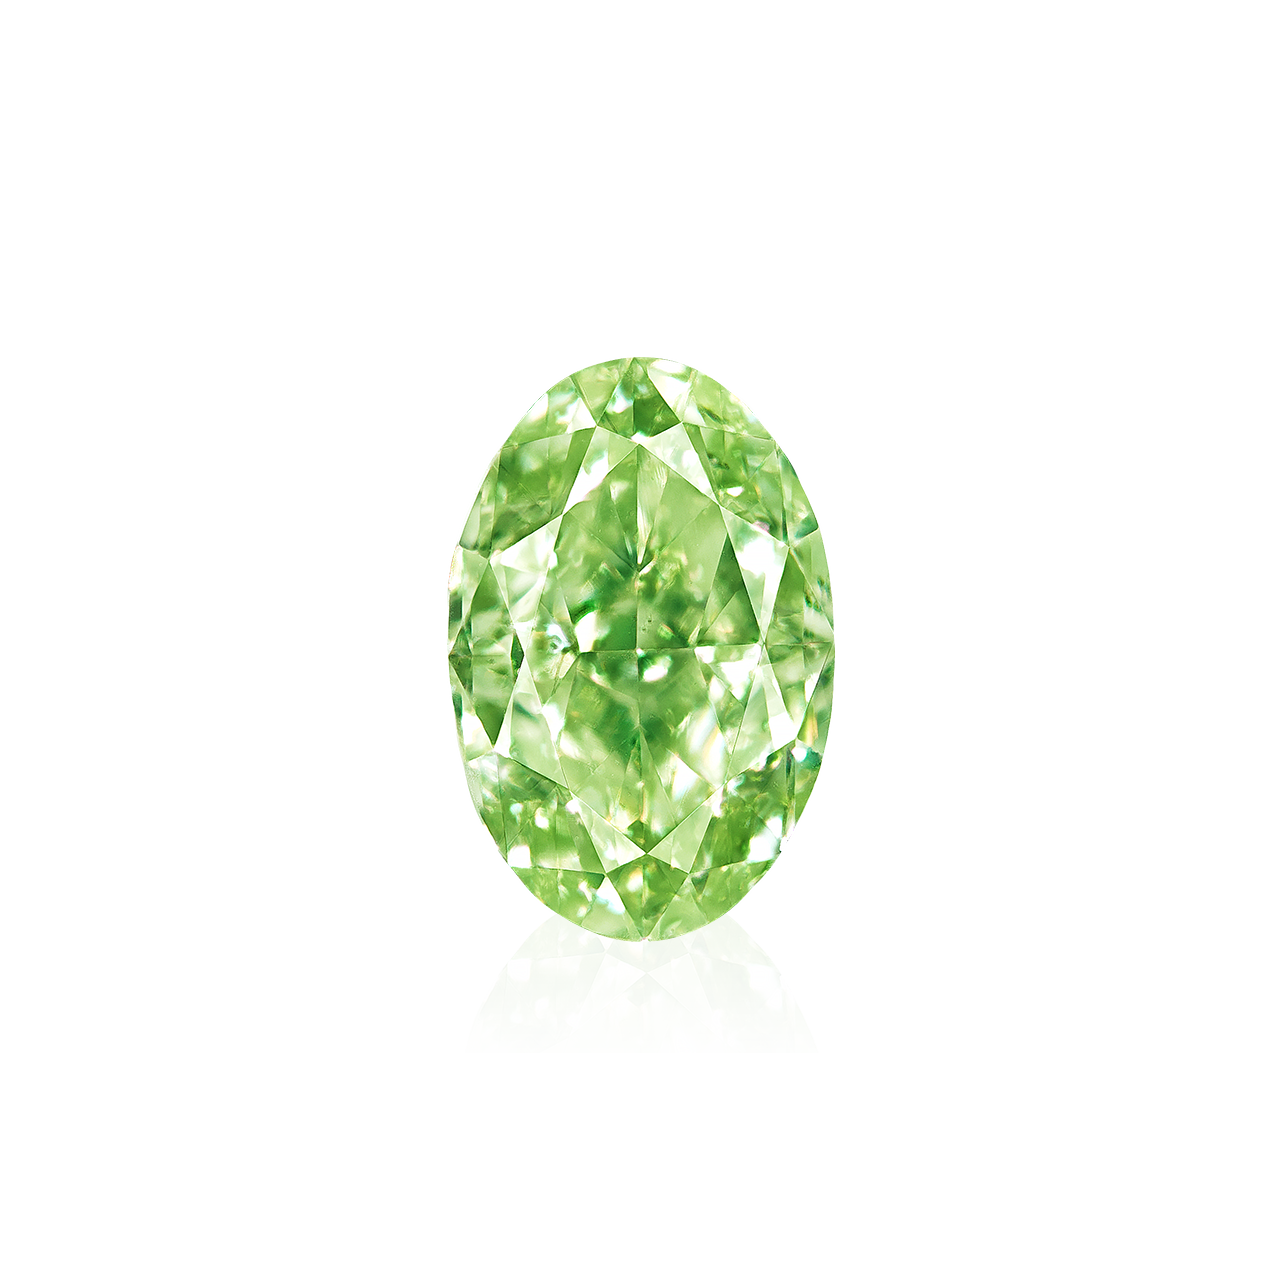 GIA 1.01克拉 黃綠鑽裸石
Unmounted Fancy Yellowish Green 
Colored Diamond